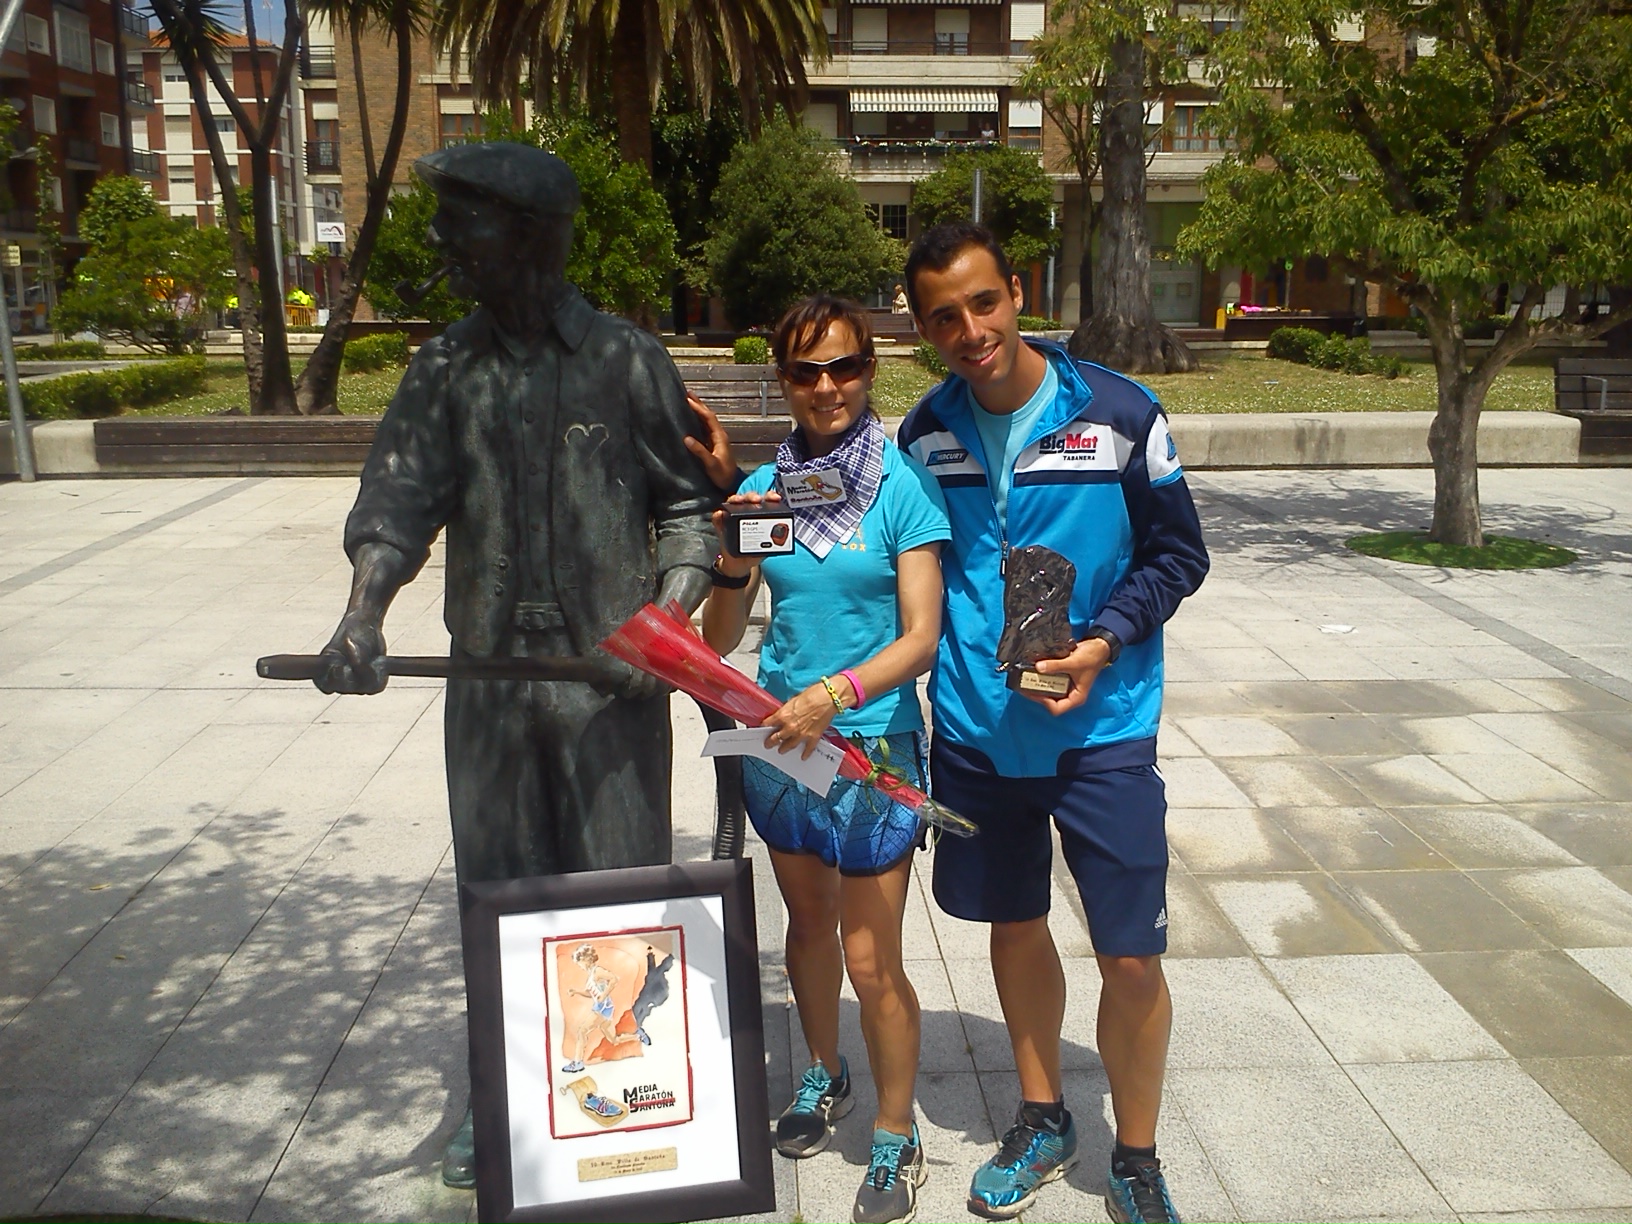 Brillantes resultados de los corredores del Blume y de la atleta del Vélox, Sonia de la Calle Gómez